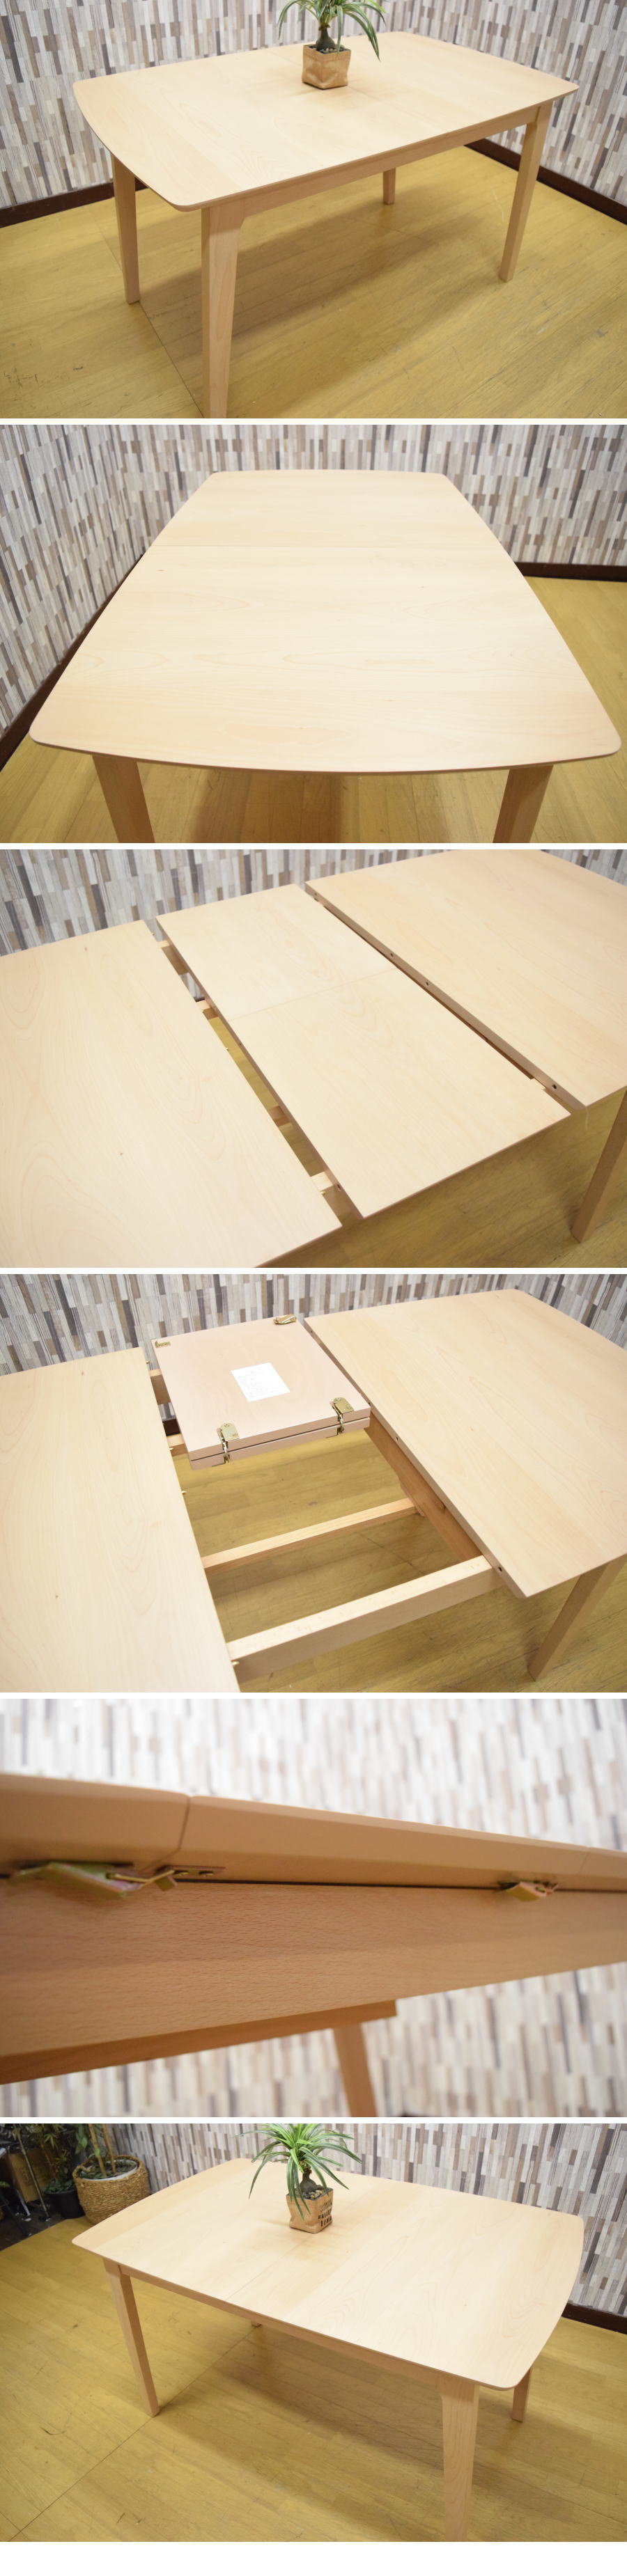 ベスト天然木ビーチ材 120/150cm幅 伸張式ダイニングテーブル 家具 アウトレット 未使用 食卓AB 0613HH2 その他